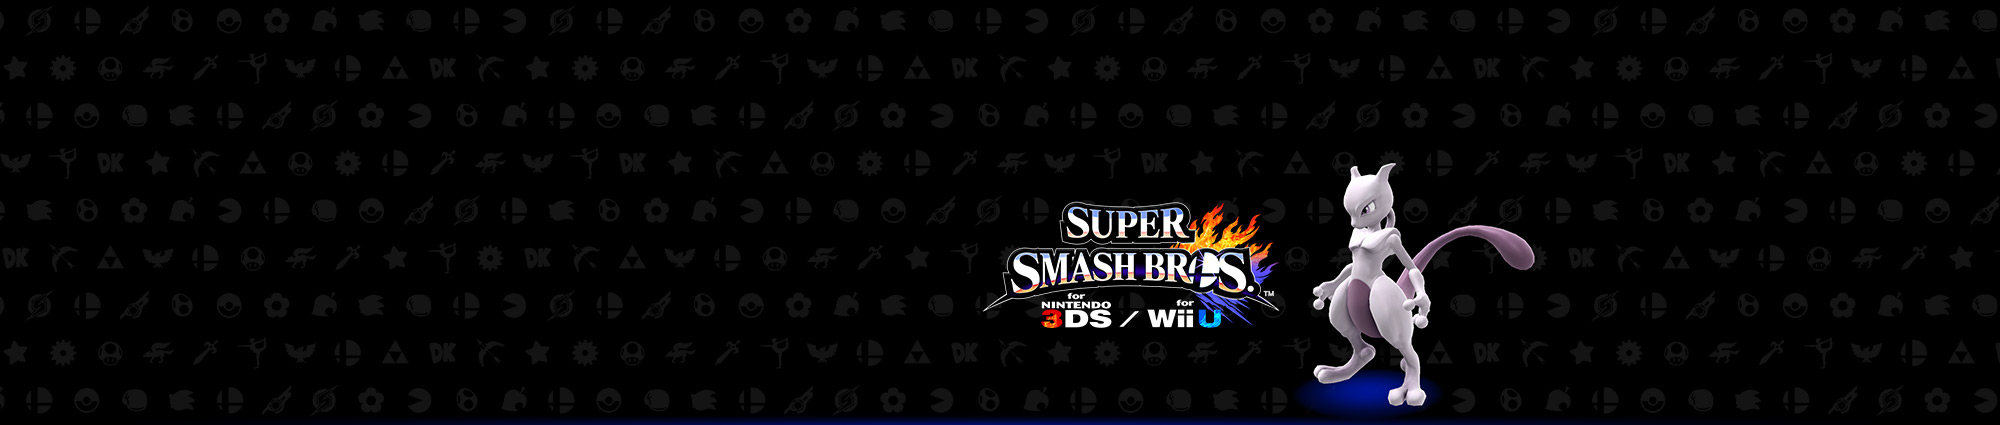 Promoción Super Smash Bros. en el Club Nintendo